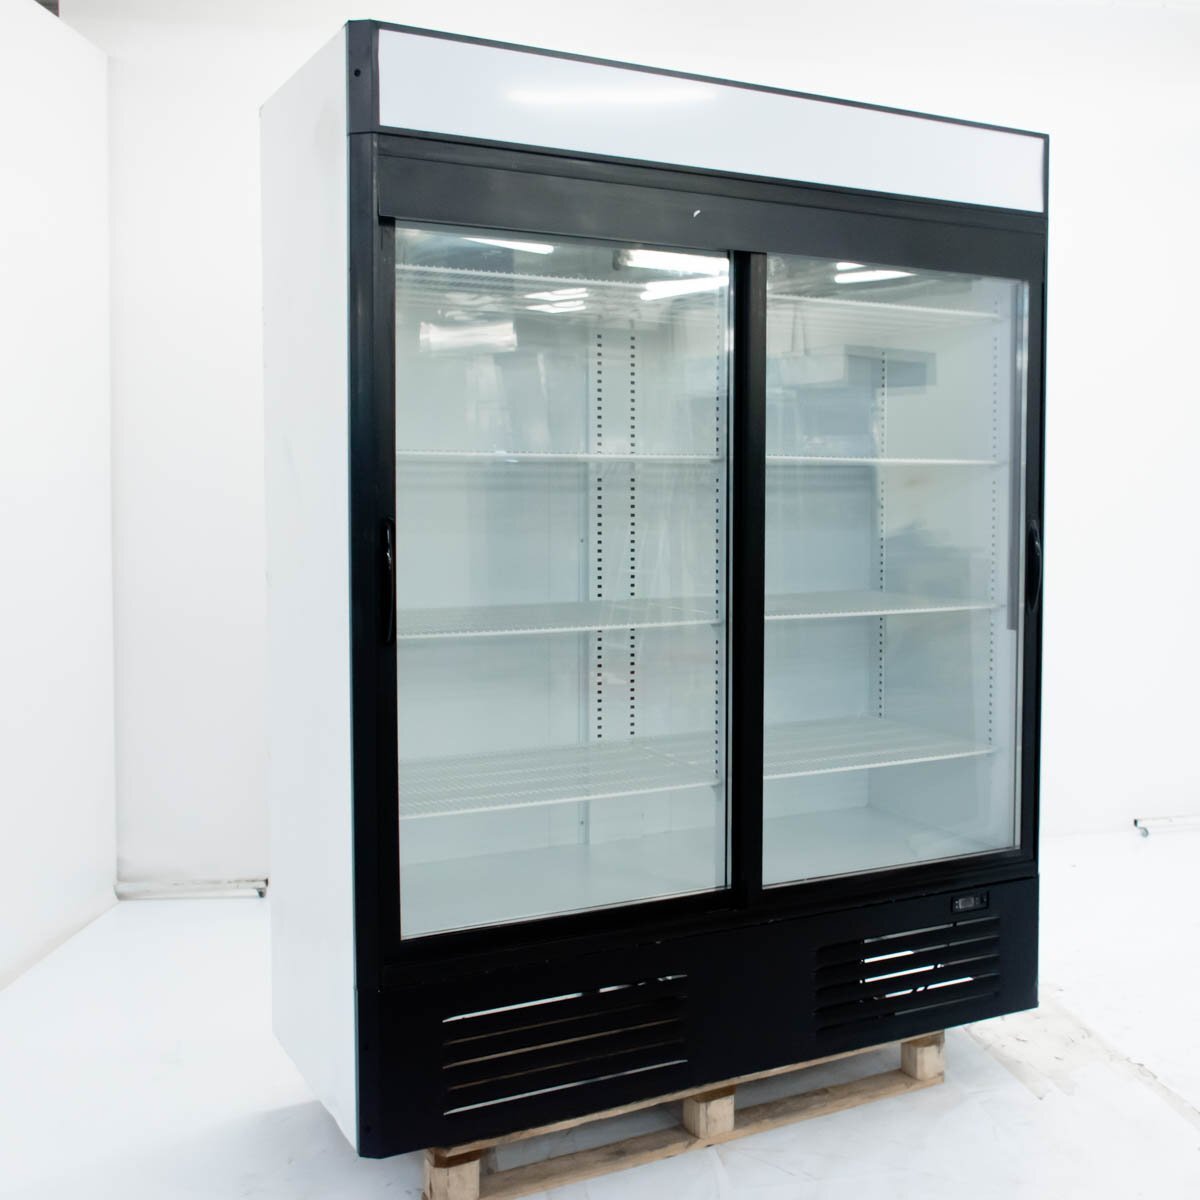 Шкаф холодильный марихолодмаш капри 0 7 м